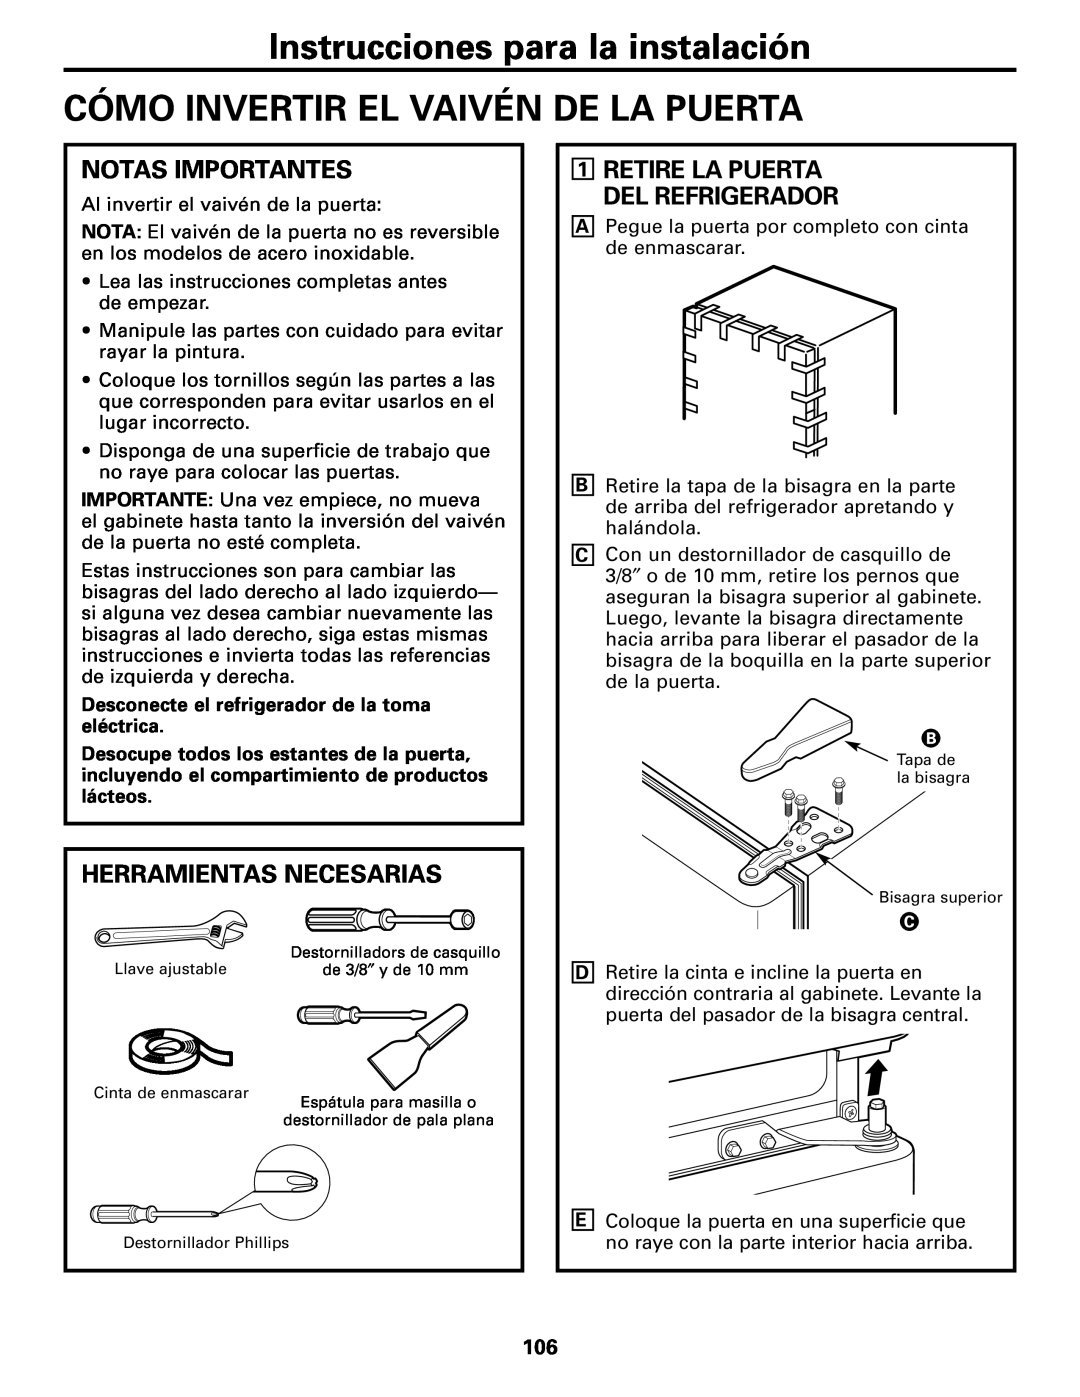 GE 197D4618P003 operating instructions Cómo Invertir El Vaivén De La Puerta, Notas Importantes, Herramientas Necesarias 